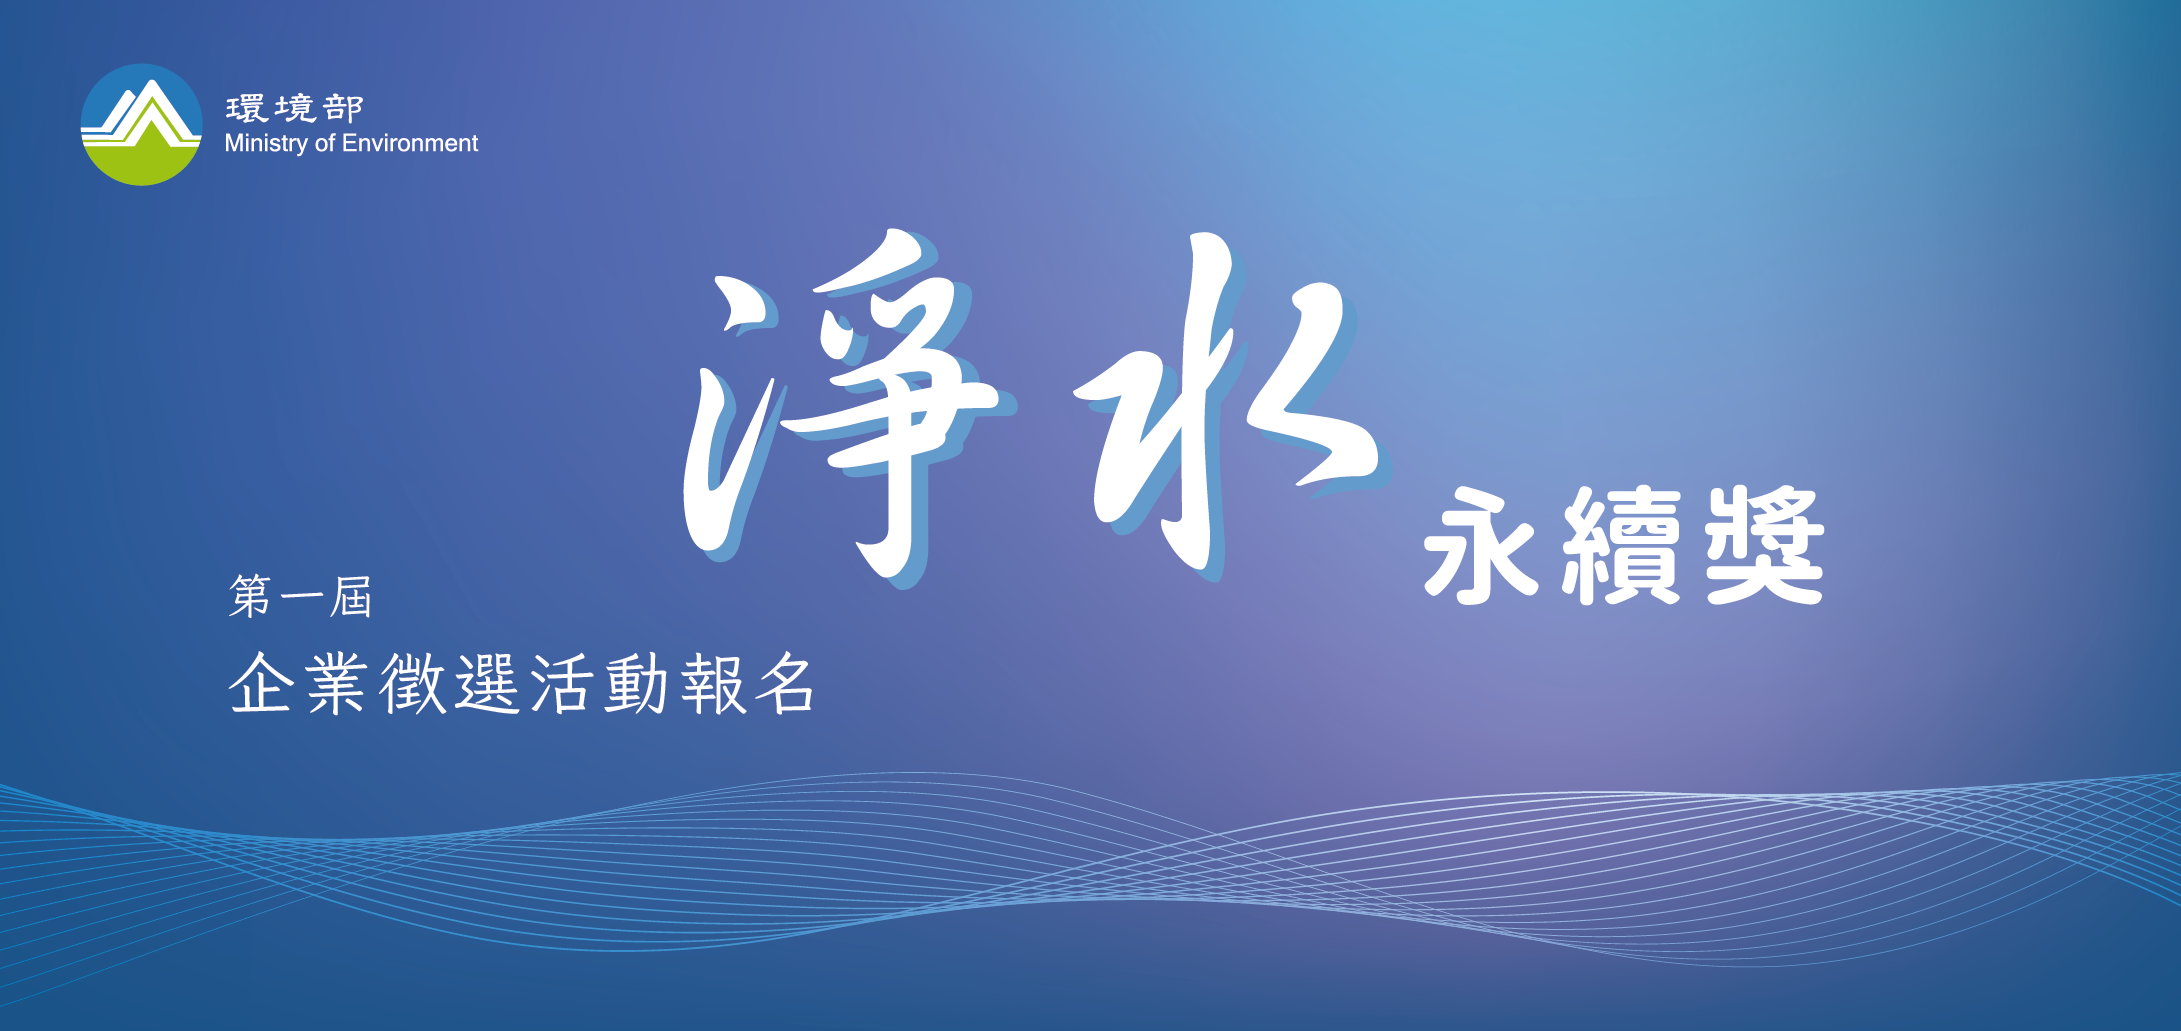 第一屆「淨水永續獎」企業徵選活動報名網banner